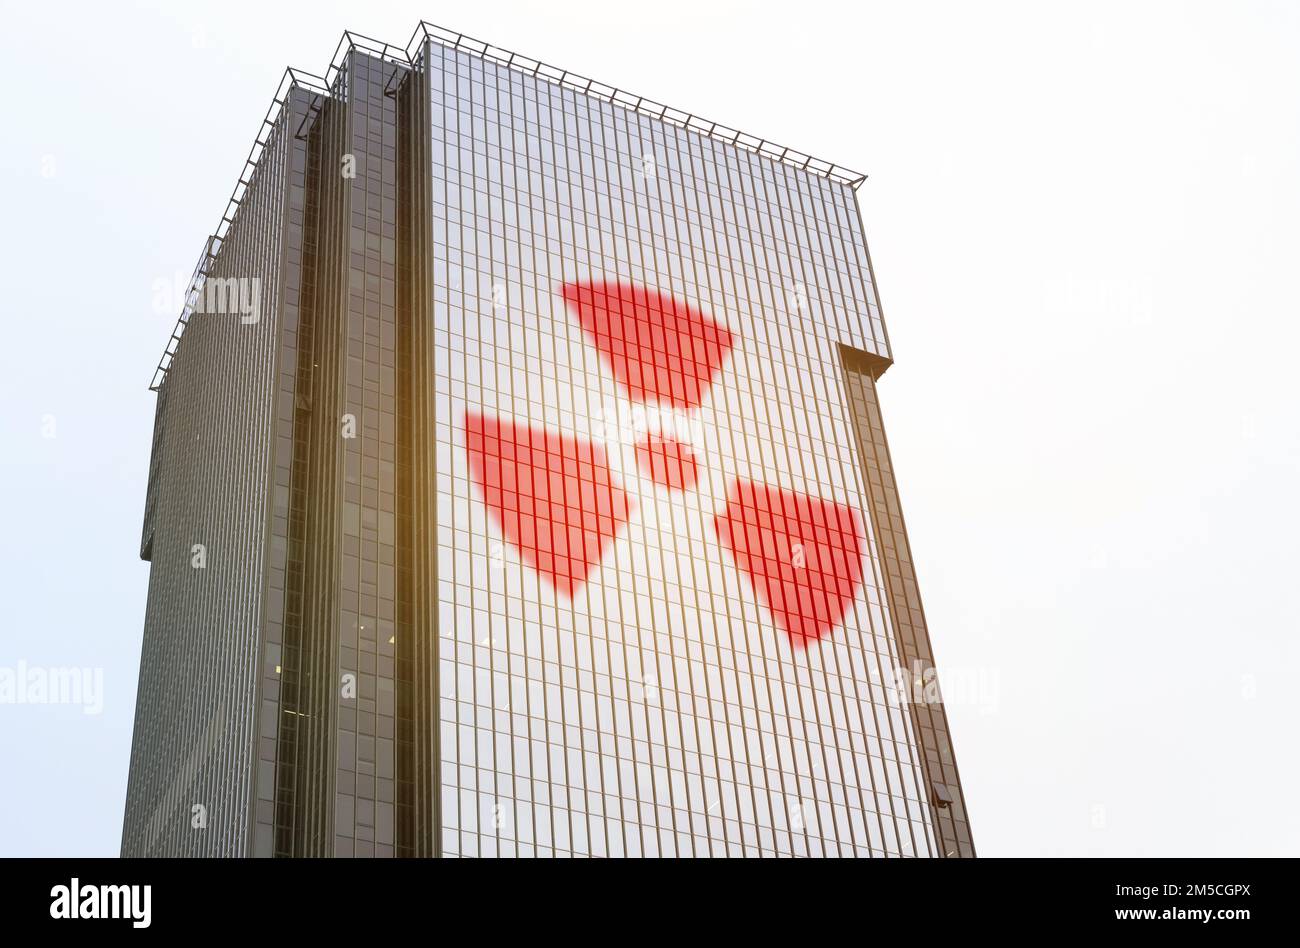 Industriekonzept. Ein Symbol ist auf der Glasoberfläche des Gebäudes abgebildet - Strahlungssymbol Stockfoto